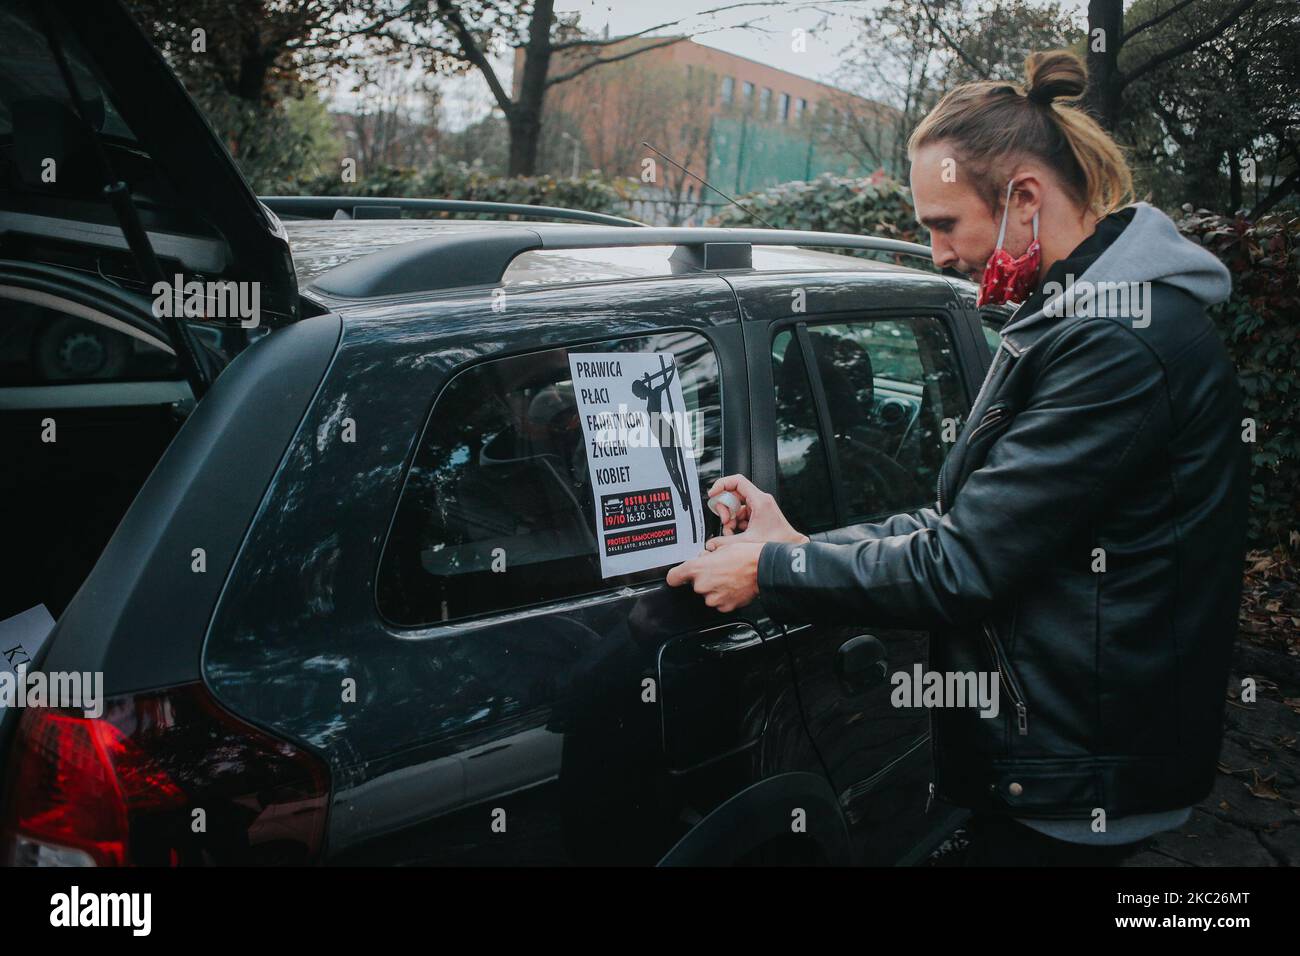 Der Frauenstreik fand am 19. Oktober 2020 in Breslau, Polen, statt. Aufgrund von COVID-19 entschied sich die Breslauer Gruppe für einen Autostreik. Sie wollen die Aufmerksamkeit auf die Probleme von Frauen in Polen mit gekennzeichneten Fahrzeugen und langsamem Stadtfahren lenken. (Foto von Krzysztof Zatycki/NurPhoto) Stockfoto